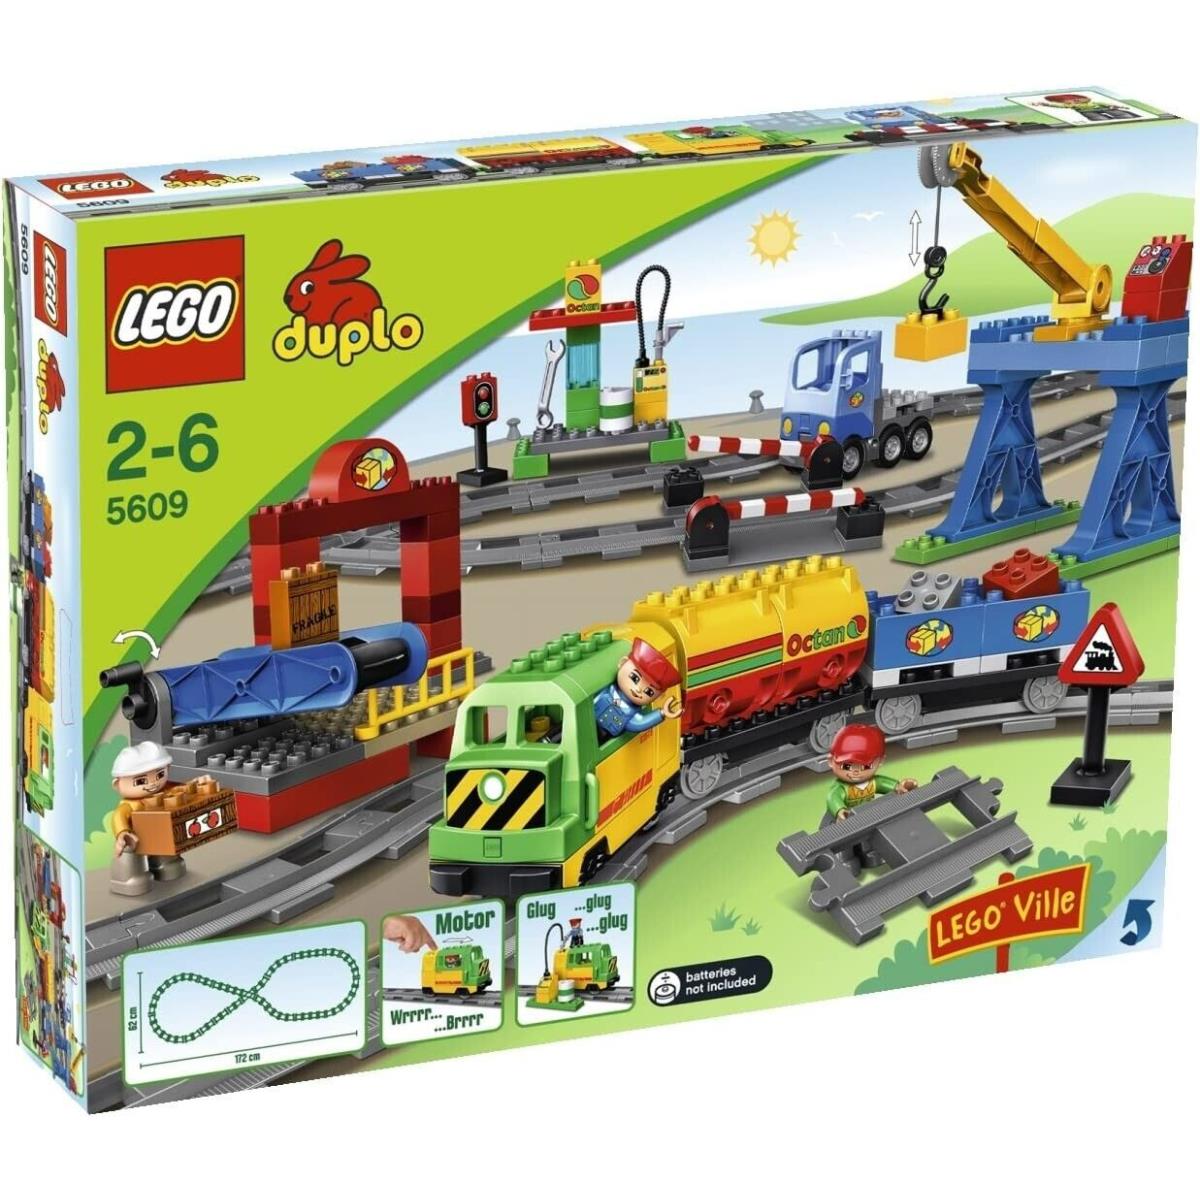 Lego Duplo Legoville 5609: Deluxe Train Set Hard to Find Vintage Set